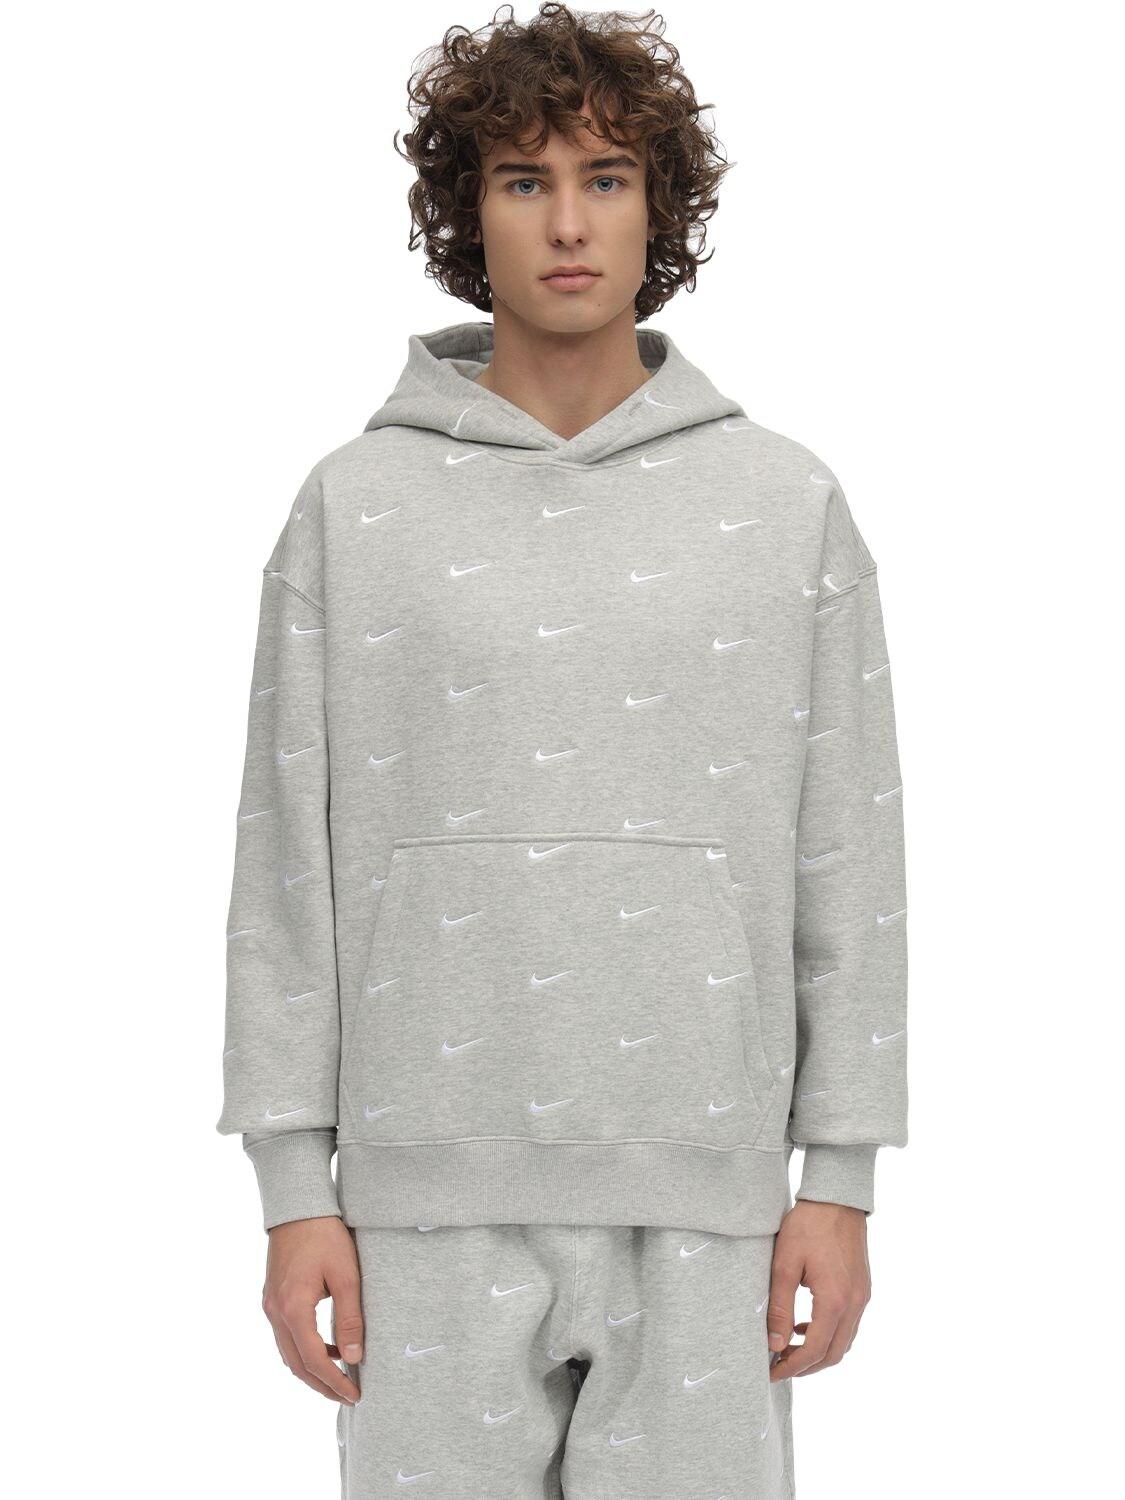 nike nrg grey hoodie